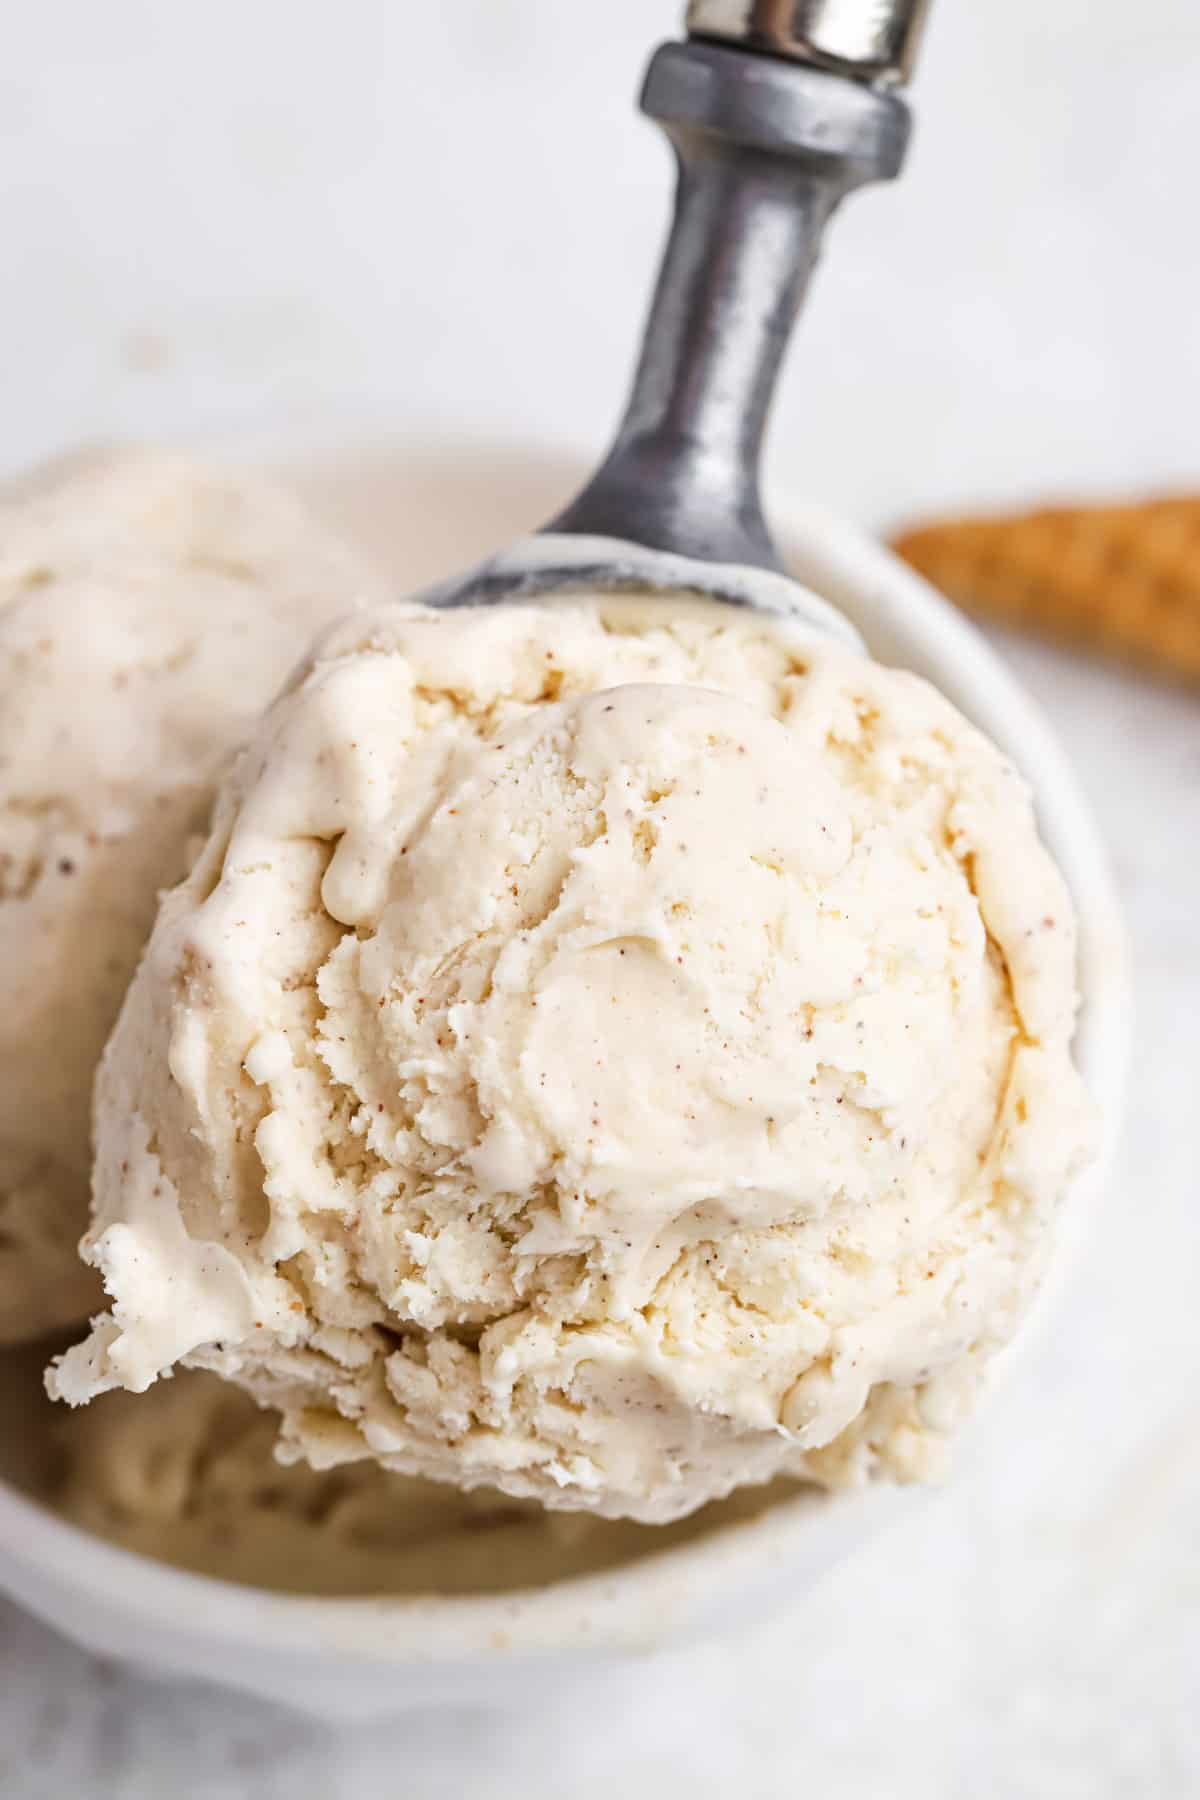 Close-up of a scoop of eggnog ice cream